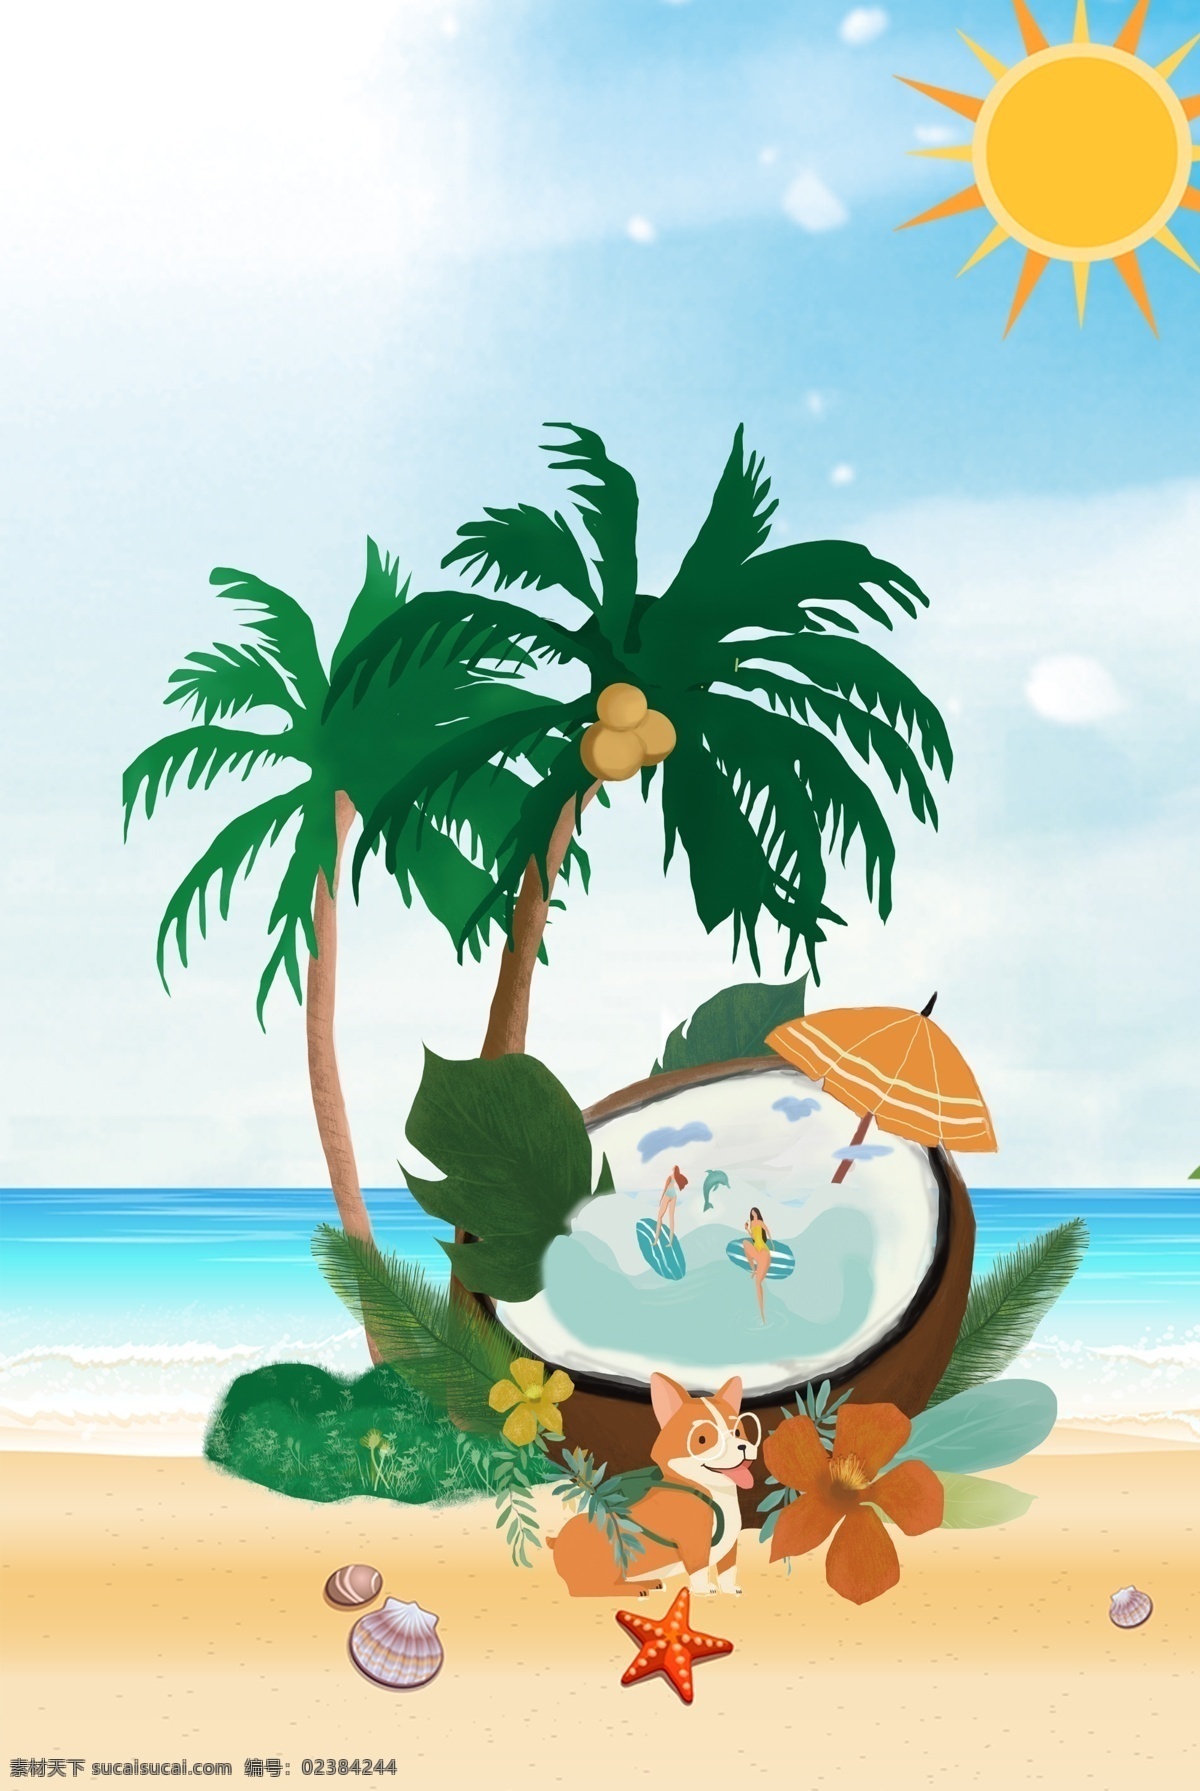 夏日 海边 风景 背景 夏天 海滩 度假 太阳 自驾游 汽车 大海 插画 夏天风景 夏日海边风景 海边风光 棕榈树